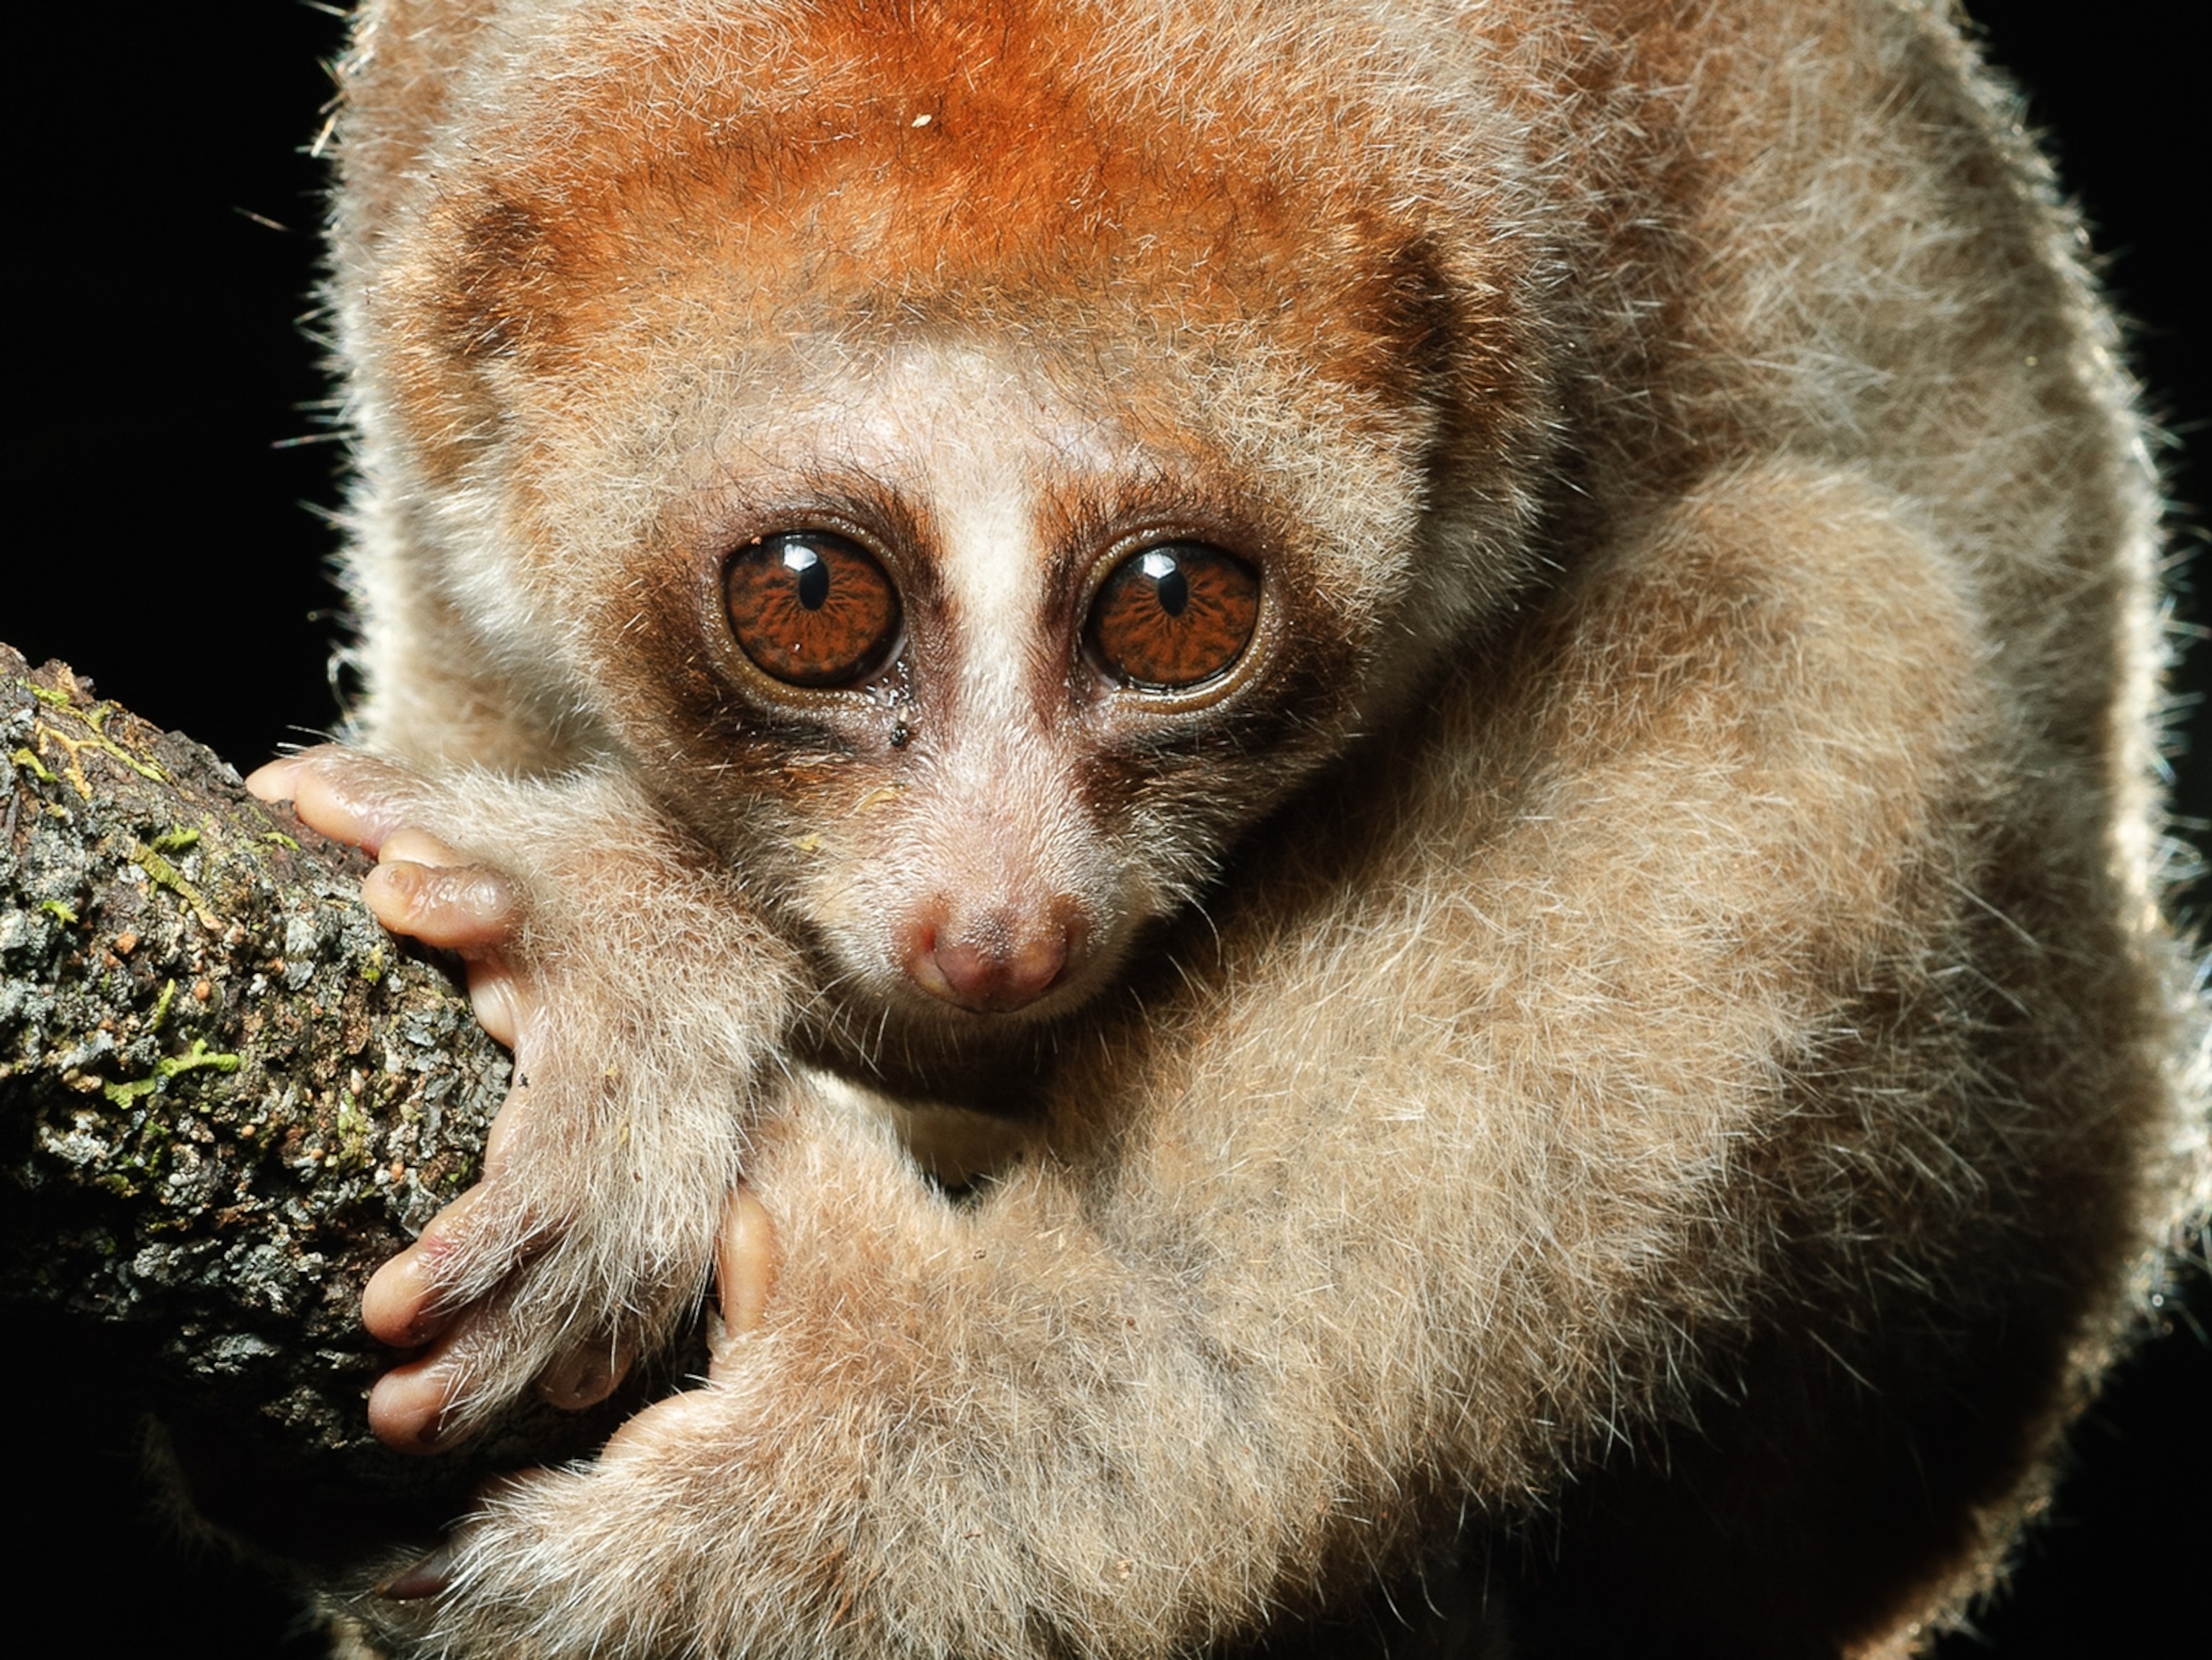 Venomous Primate Discovered in Borneo